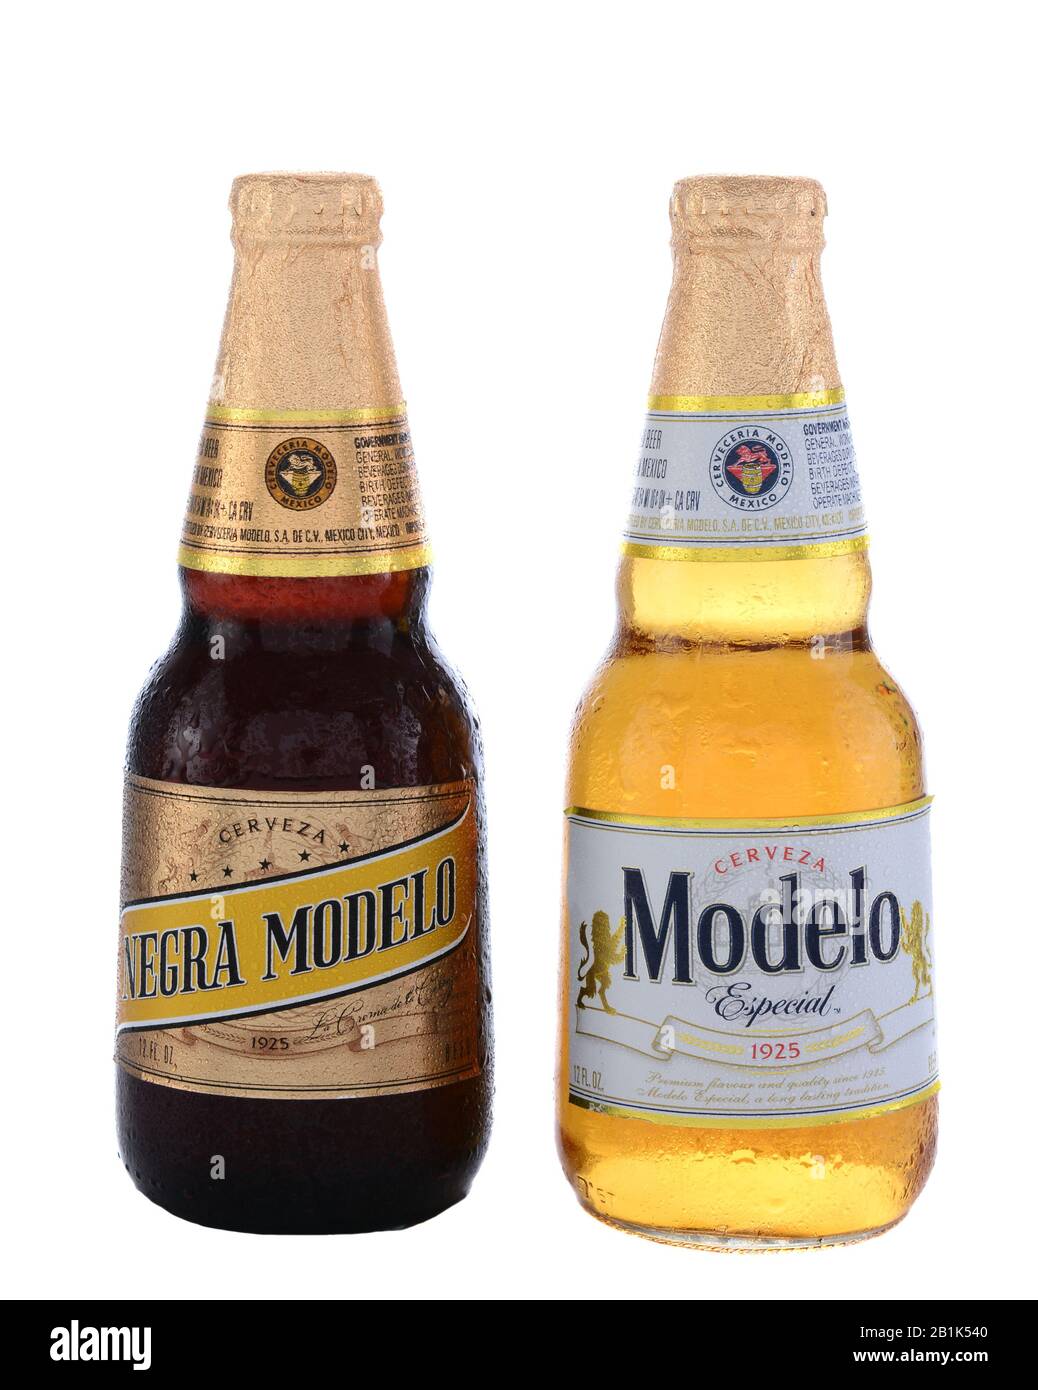 Irvine, CA - 14. JUNI 2015: Eine Flasche Modelo Especial und Negra Modelo. Gebraut von der Grupo Modelo, einer großen Brauerei in Mexiko, die sich im Besitz von belgisch-brasilianischen befindet Stockfoto